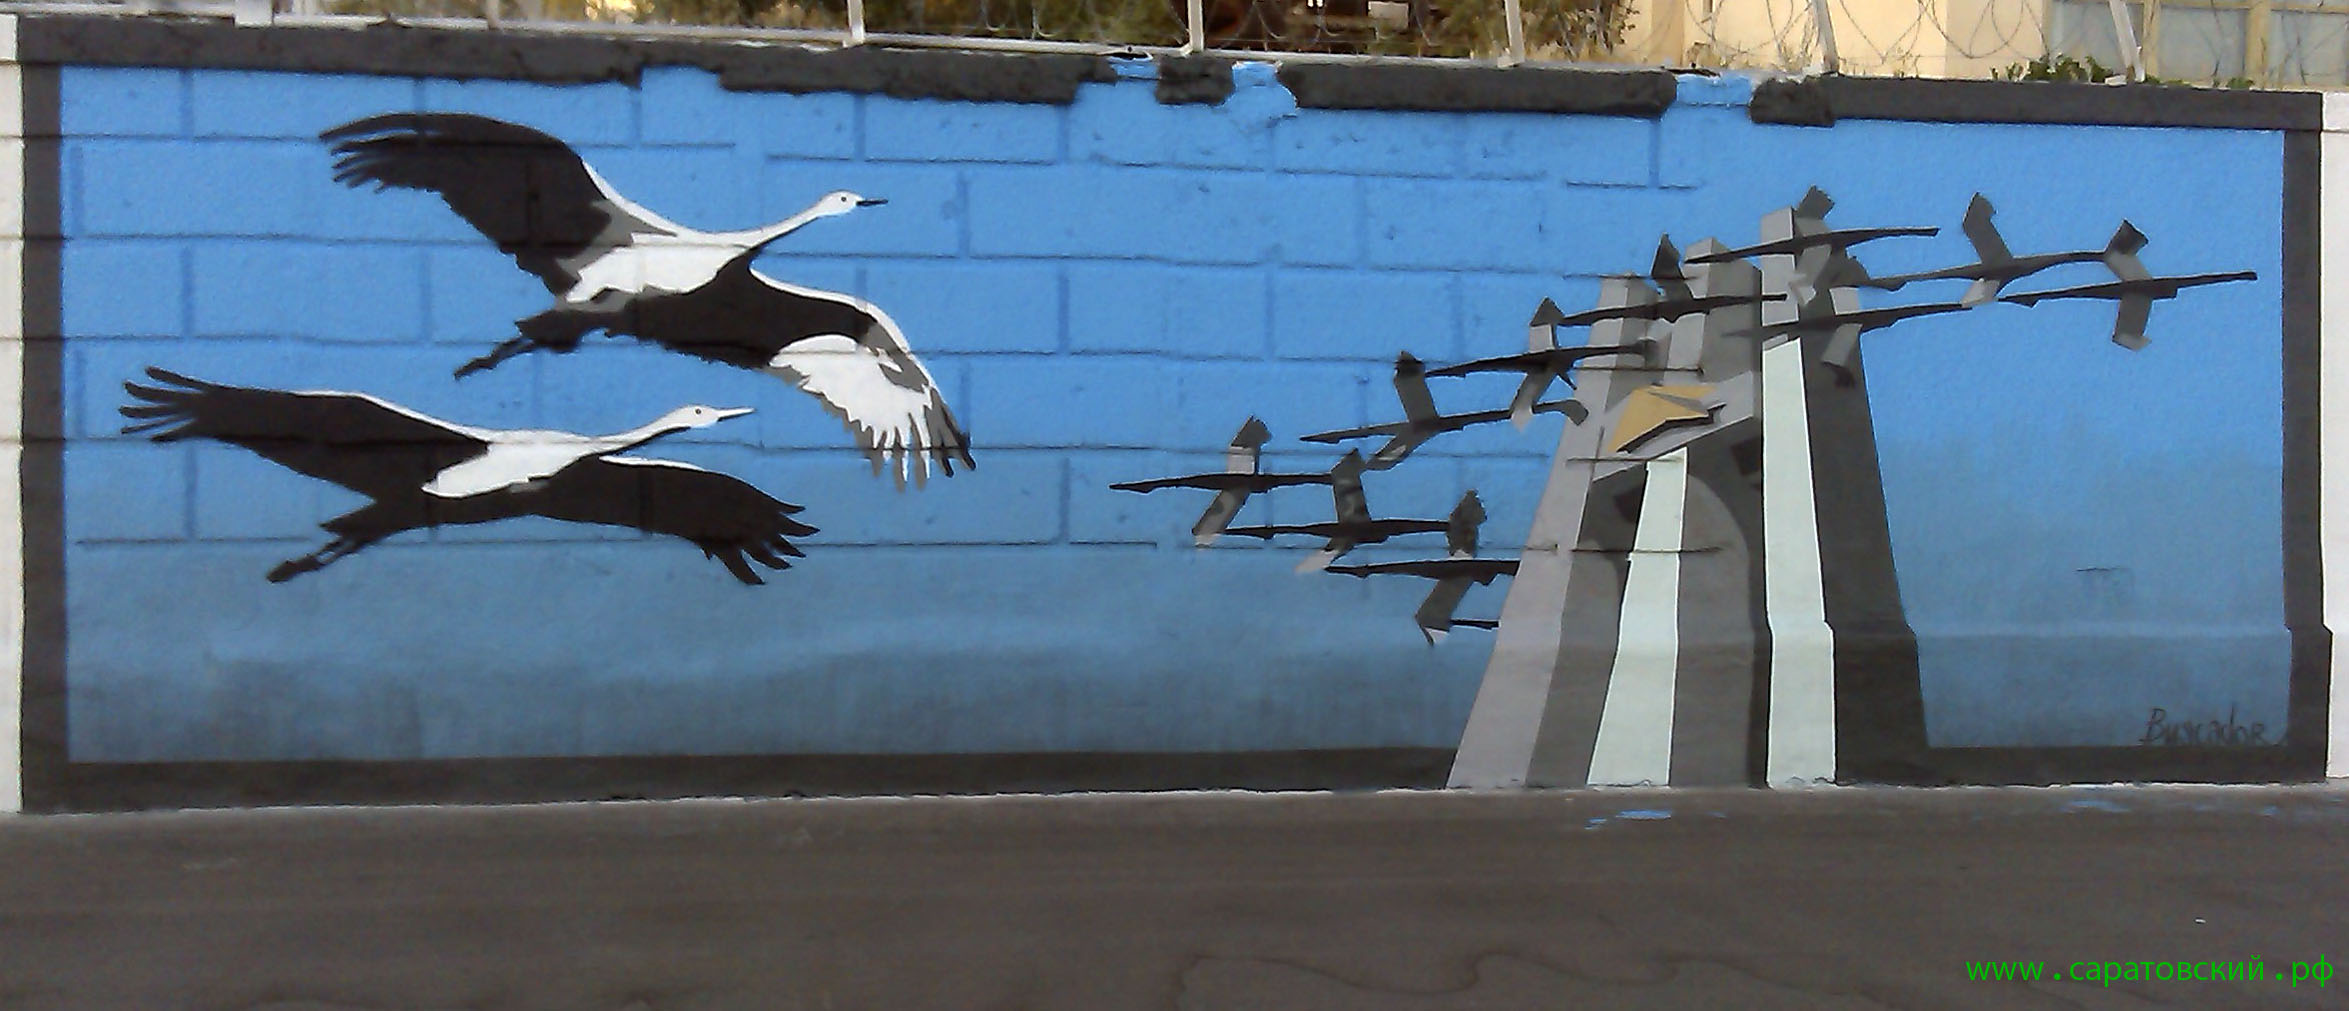 Саратовская набережная, граффити: памятник 'Журавли' в Саратове